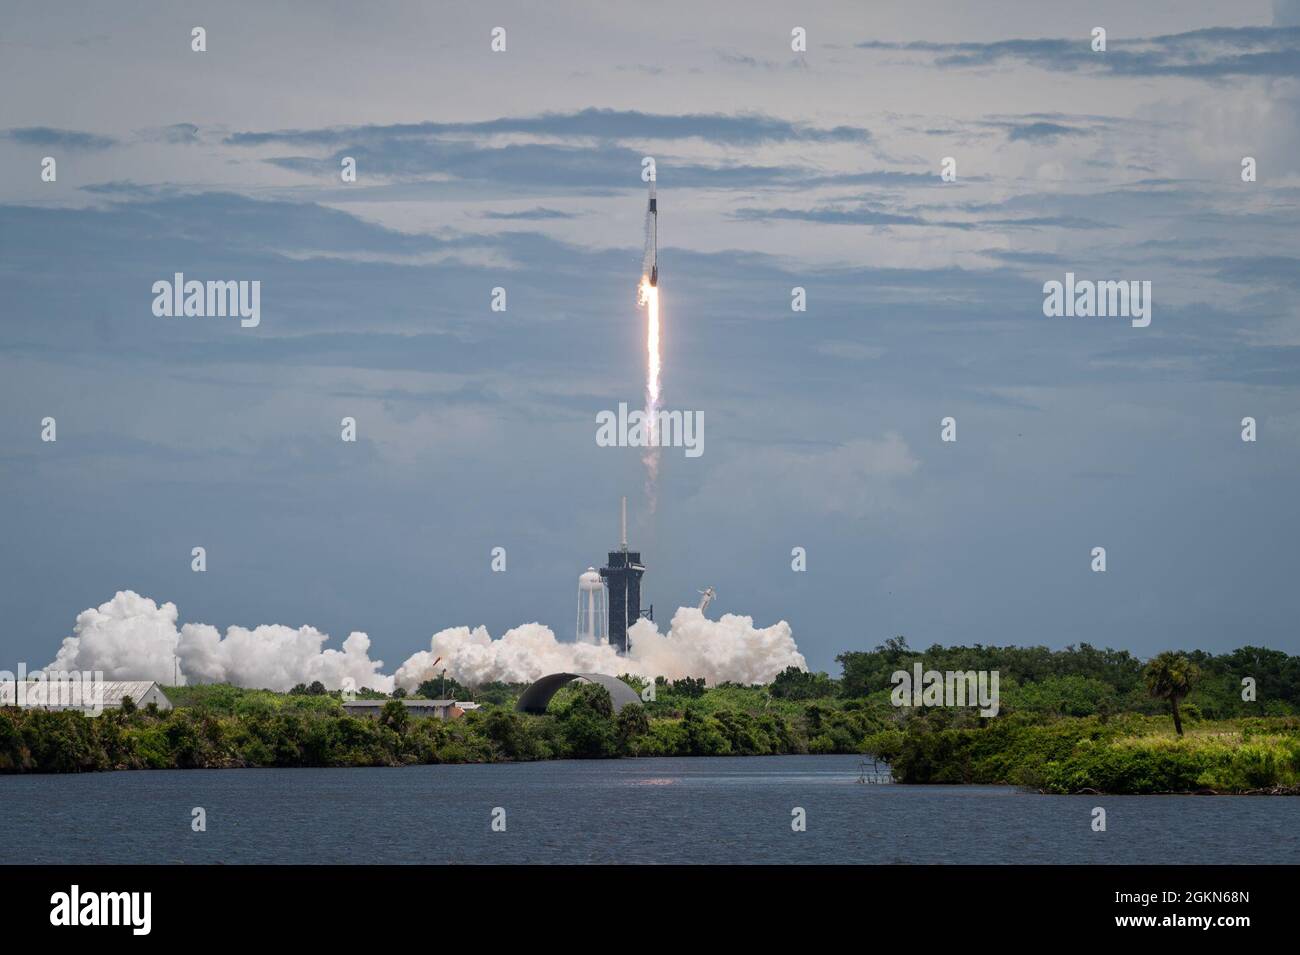 Une fusée SpaceX Falcon 9 transportant la charge utile CRS-22 de la NASA est lancée à partir du complexe de lancement 39A au Centre spatial Kennedy, en Floride, le 3 juin 2021. La charge utile était la 22e mission commerciale de réapprovisionnement à la Station spatiale internationale et a fourni des fournitures et des études scientifiques, y compris des études sur les traitements des maladies rénales, les systèmes de racines de coton, l'adaptation des tardigrades à l'espace, et plus encore. Banque D'Images